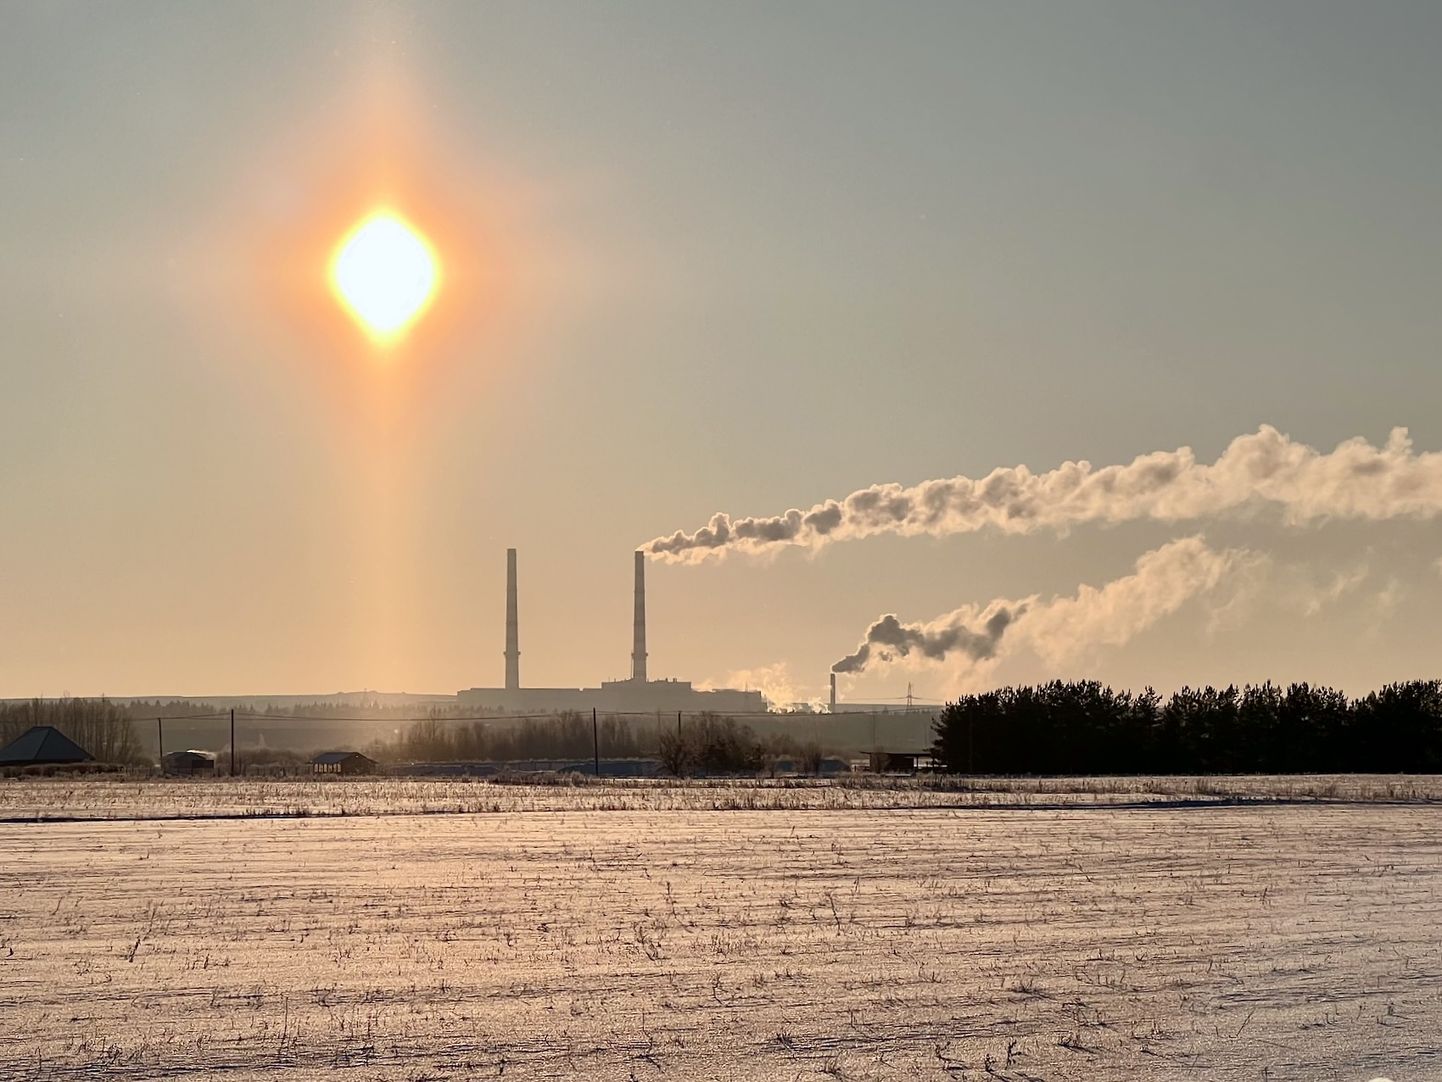 Балтийская электростанция "Enefit Power" и находящаяся на ее территории резервная газовая котельная отвечают за отопление целого большого города Нарва.